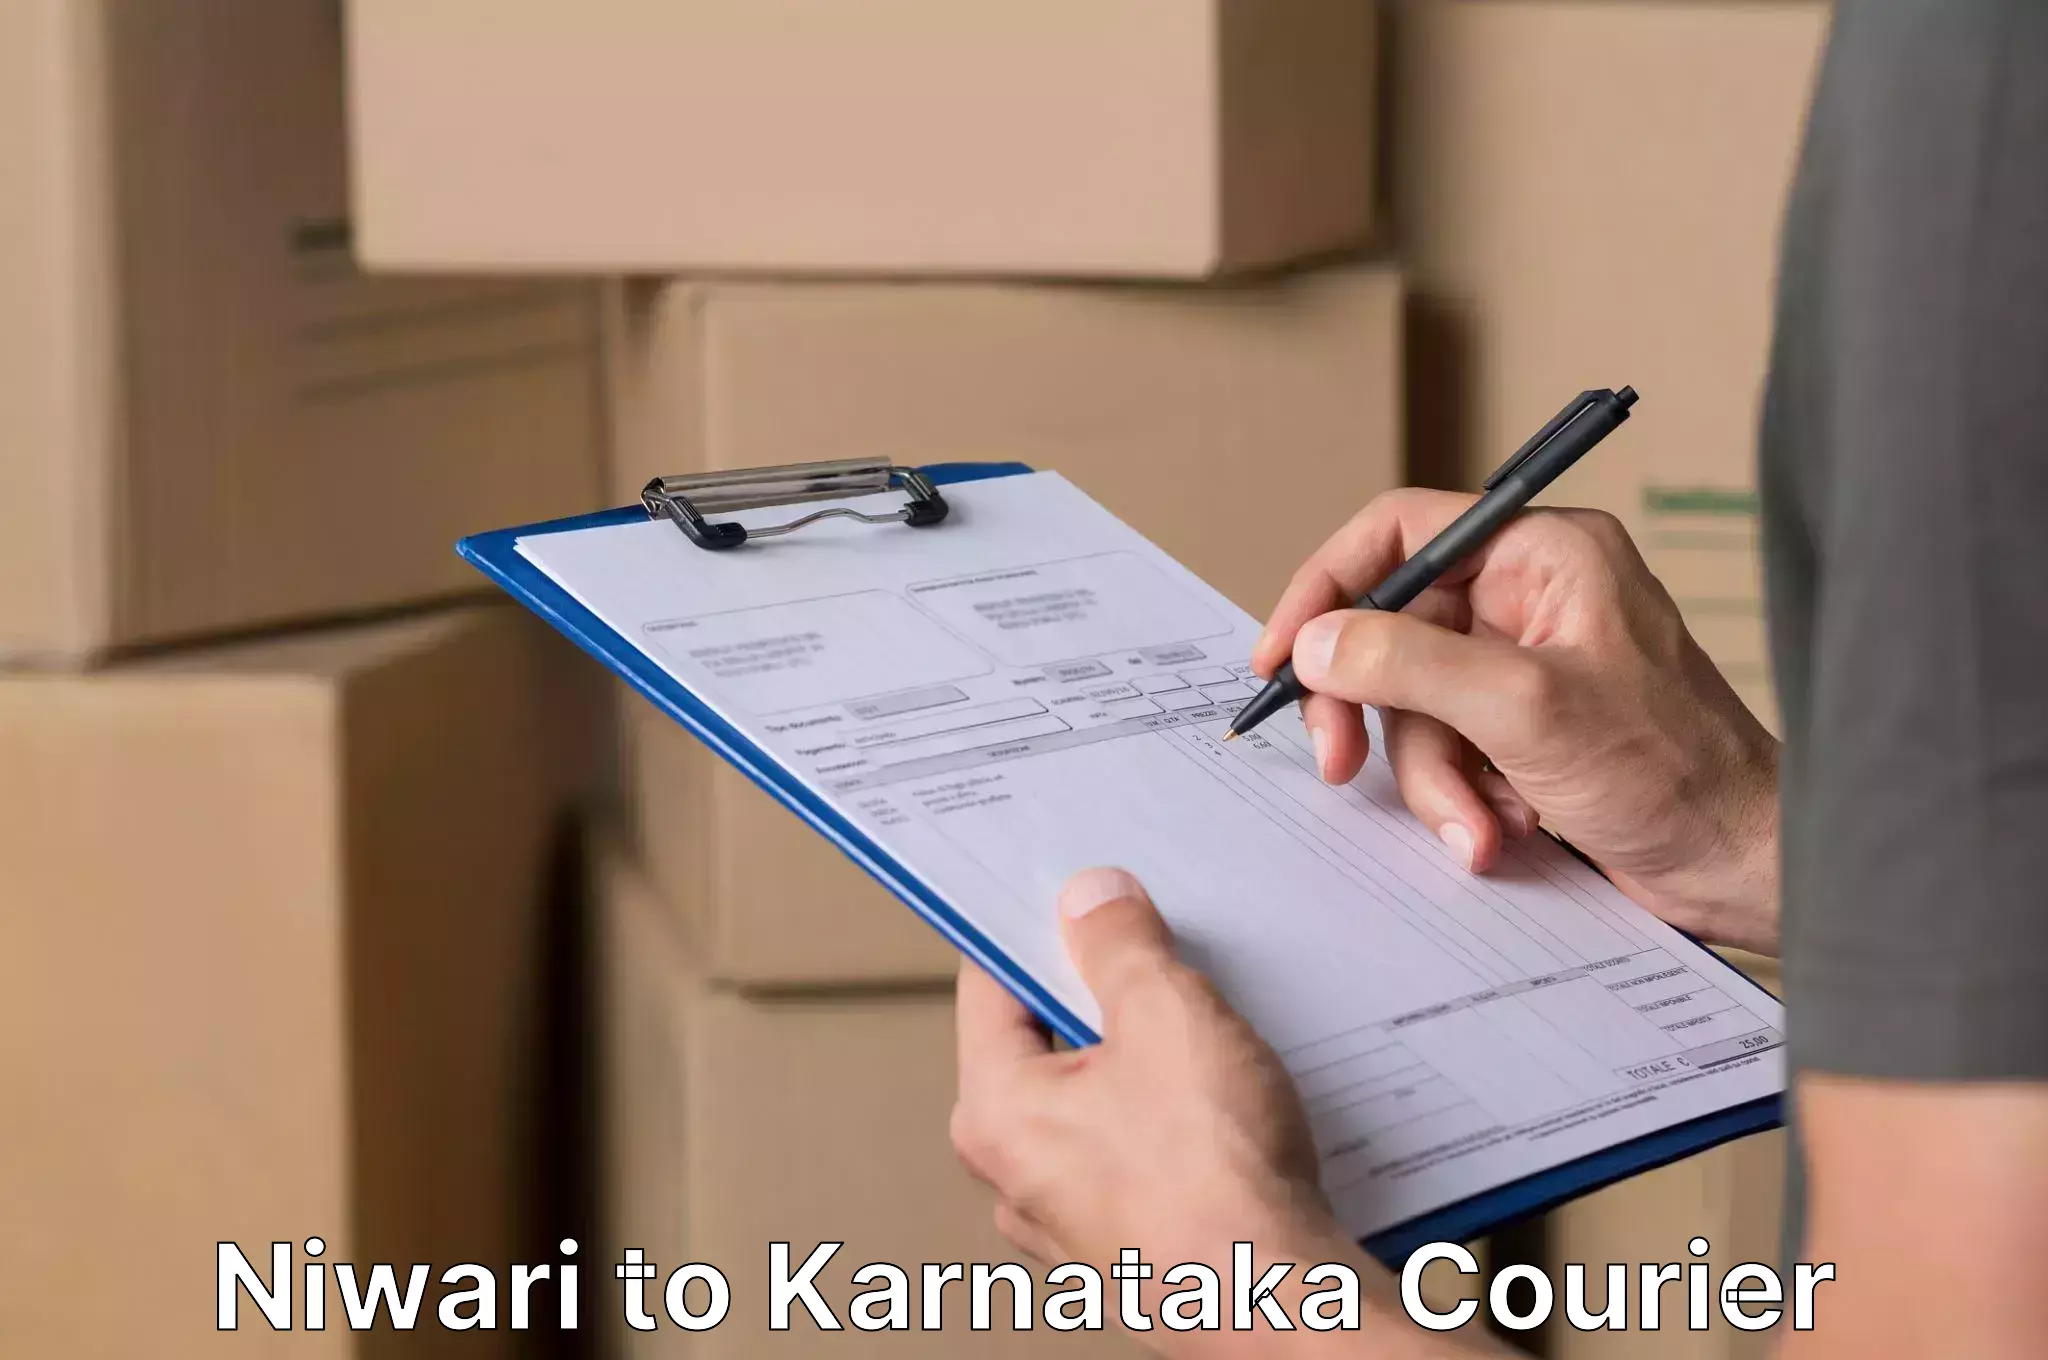 Furniture delivery service Niwari to Karnataka